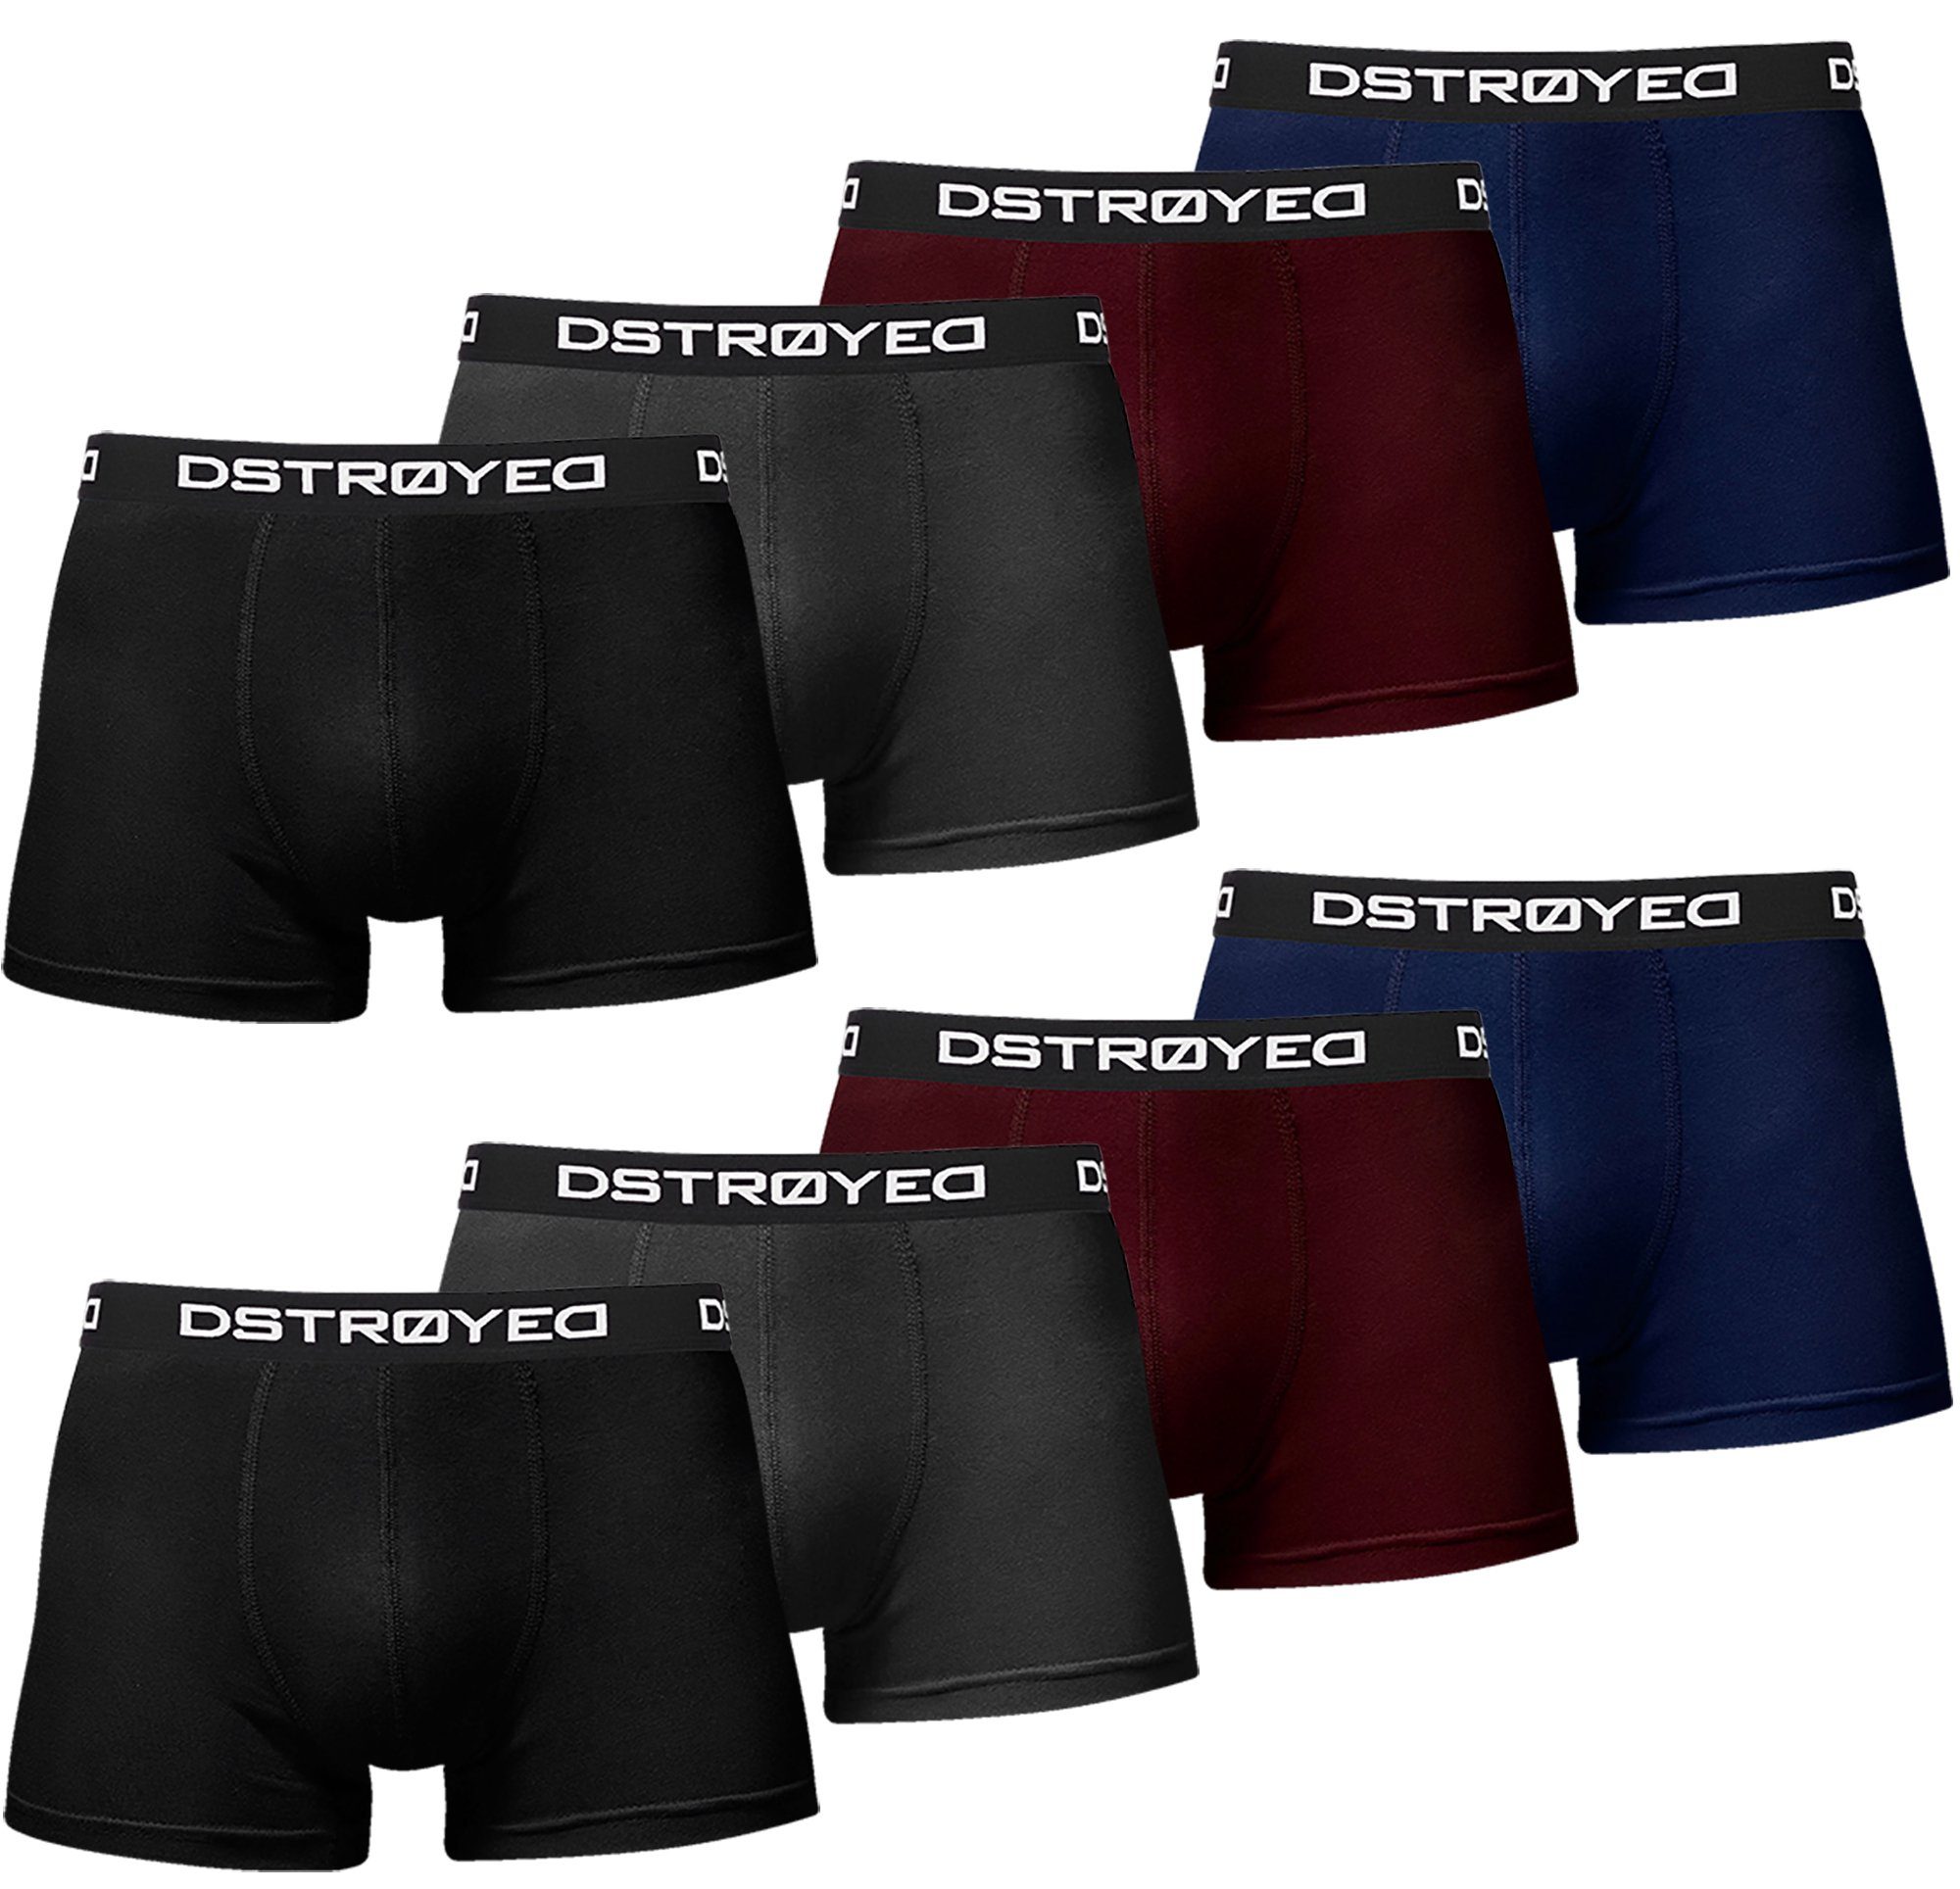 Herren Pack) Qualität Passform perfekte 8er, Männer 316b-mehrfarbig Baumwolle Unterhosen Boxershorts DSTROYED (Vorteilspack, 8er Premium